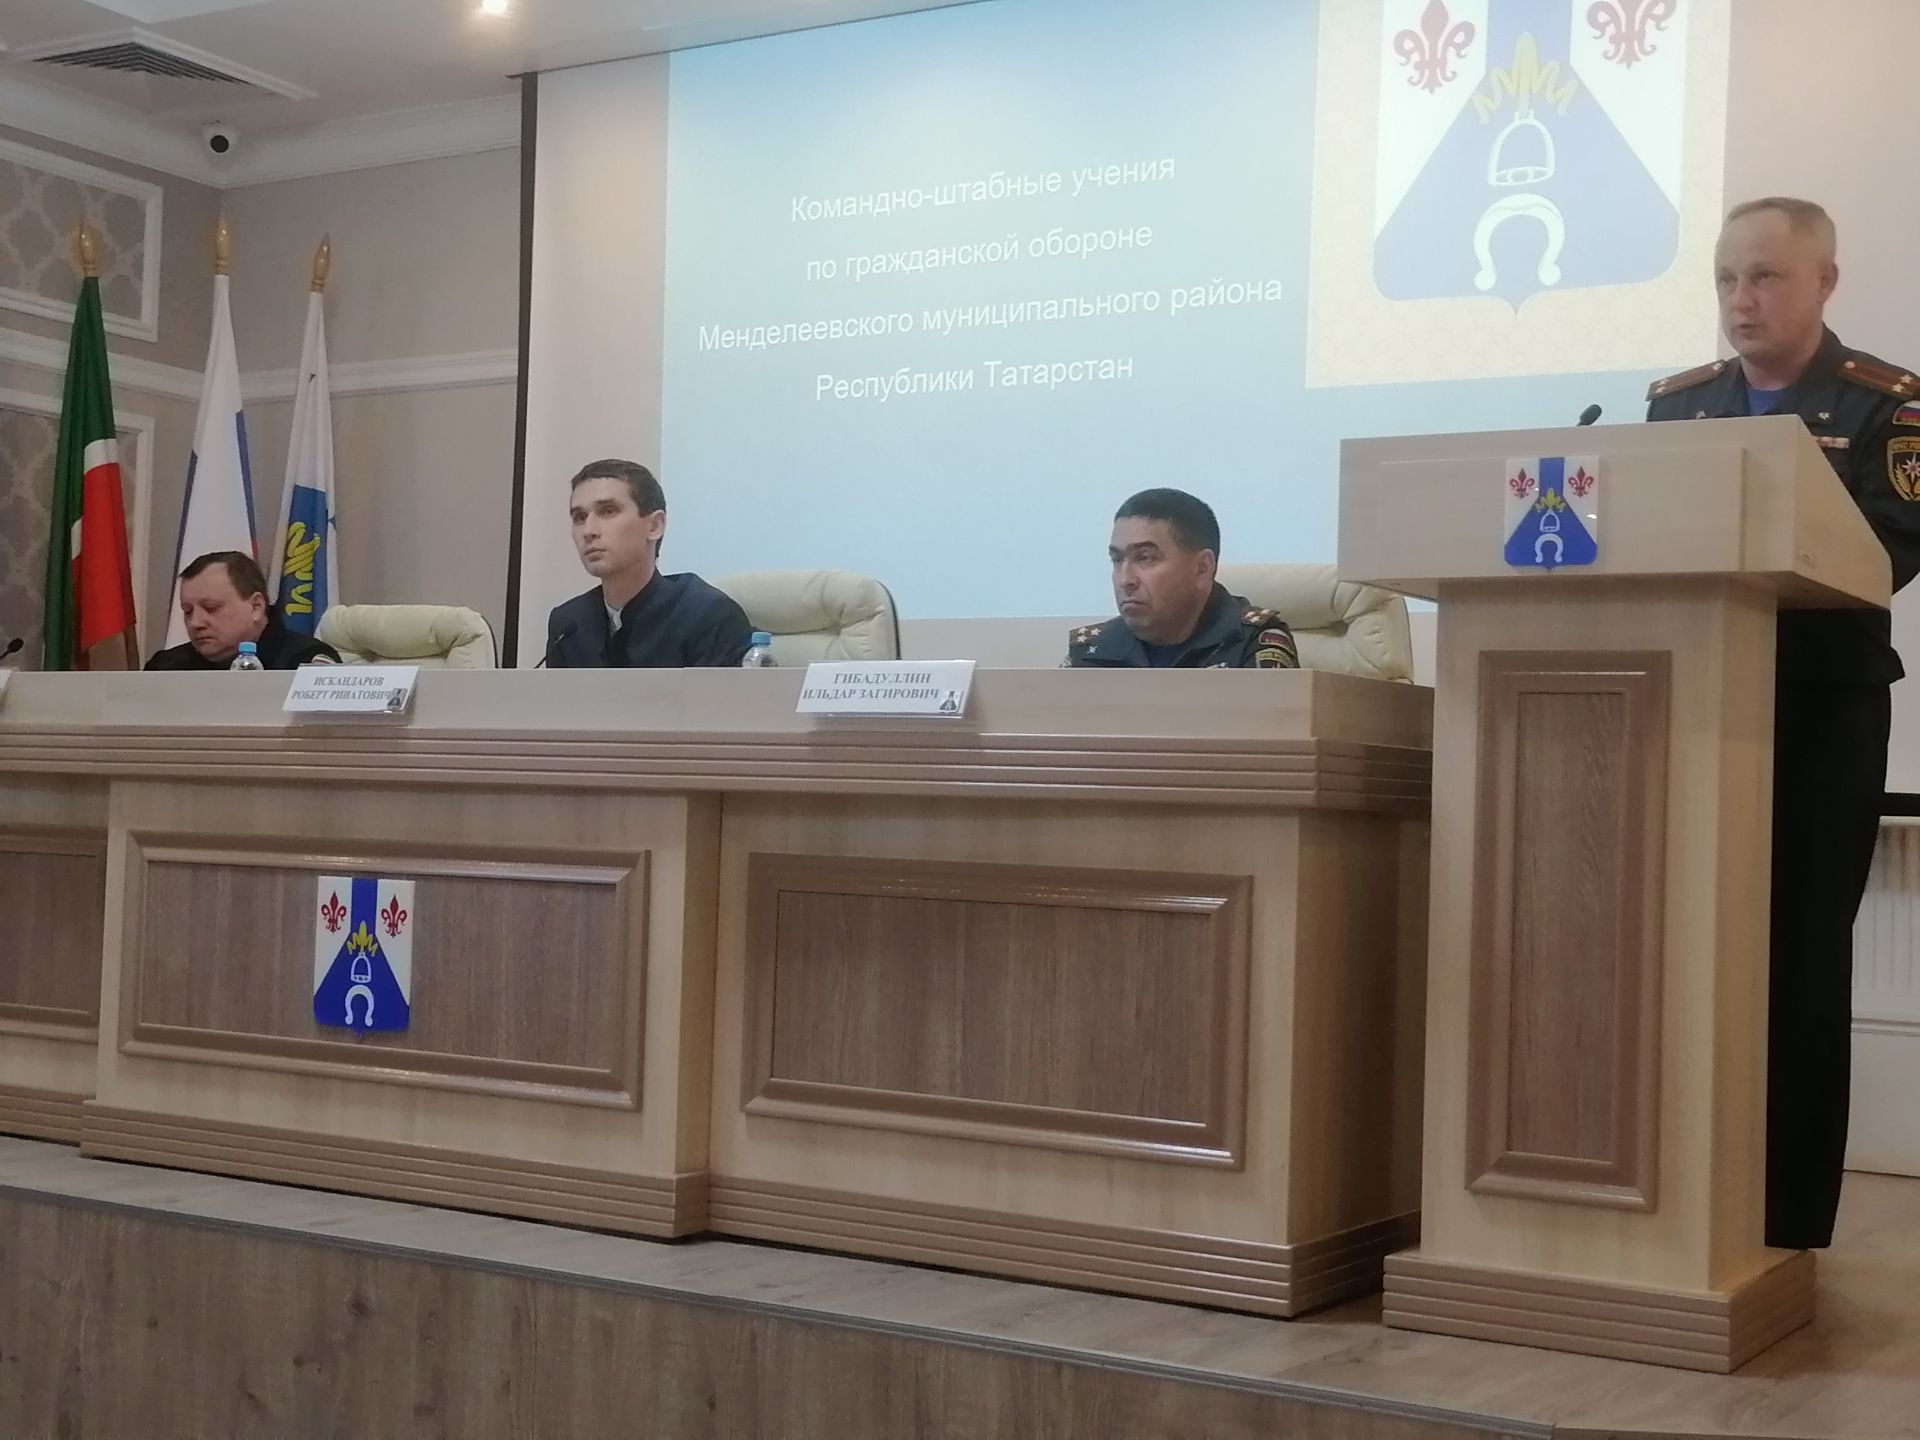 Первый день командно-штабных учений прошёл в Менделеевске на оценку «хорошо»